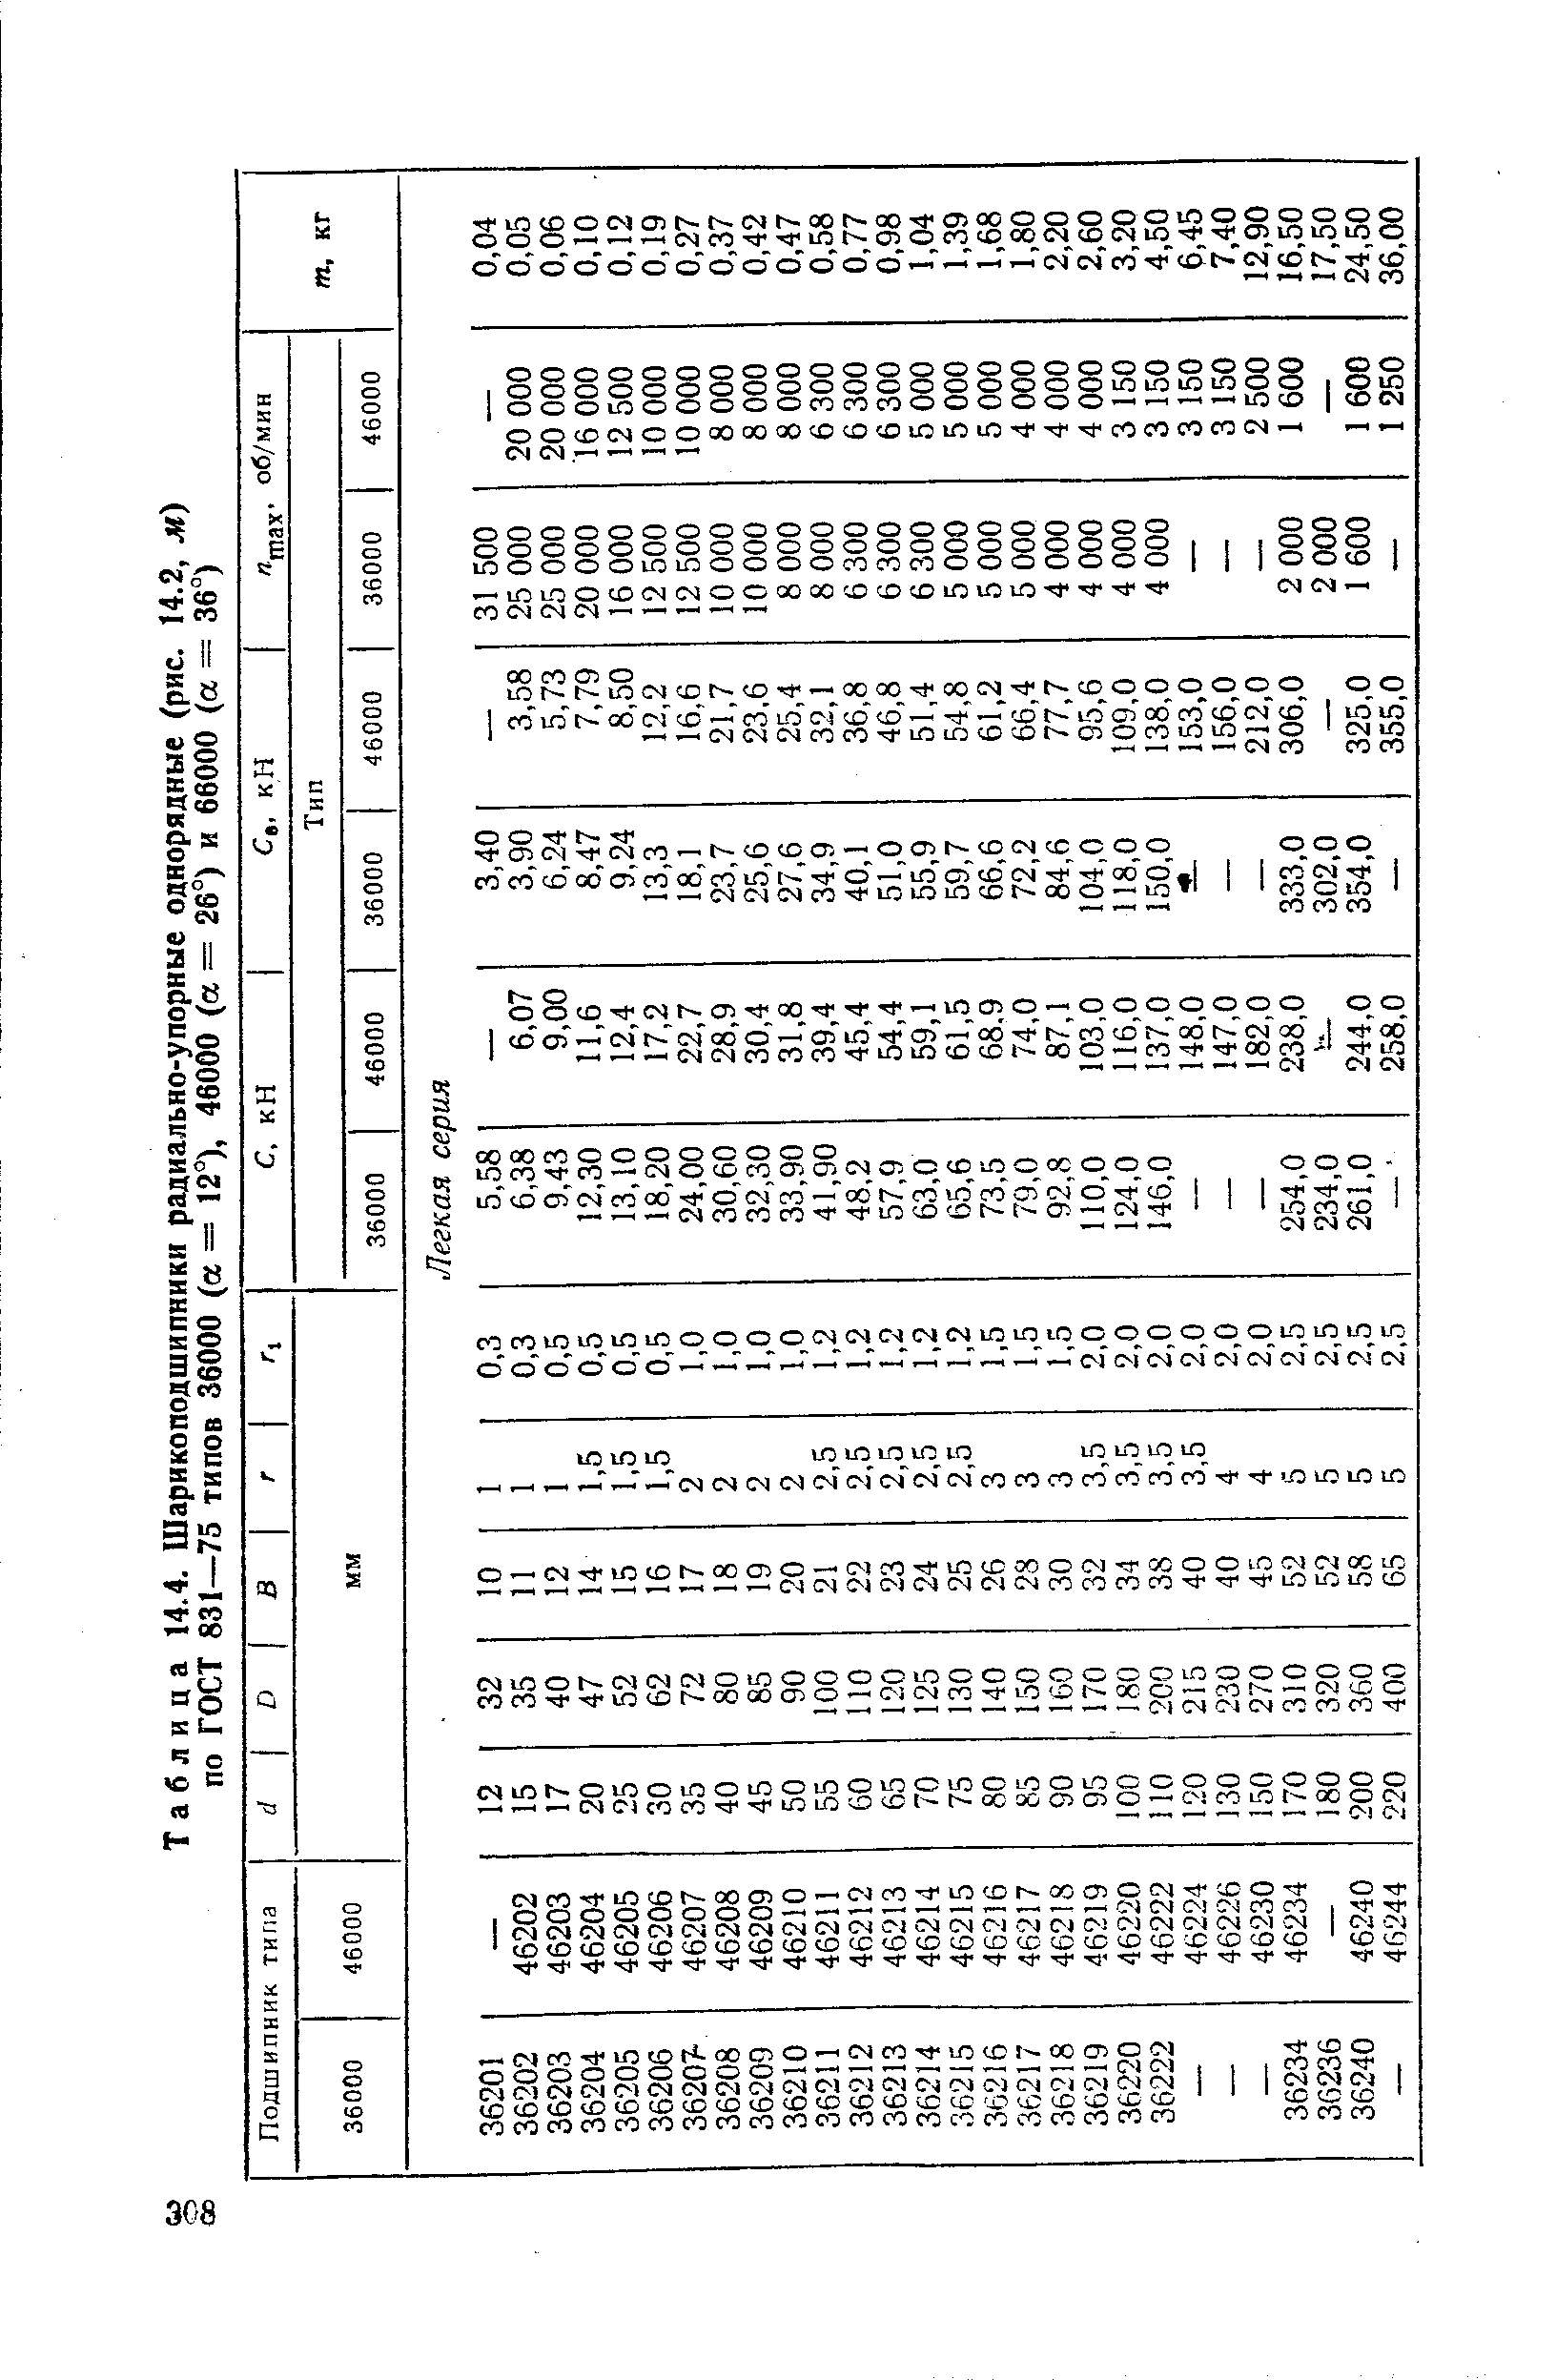 Таблица 14.4. Шарикоподшипники радиально-упорные однорядные (рис. по ГОСТ 831—75 типов 36000 (а = 12°), 46000 (а = 26°) и 66000 (а ==
